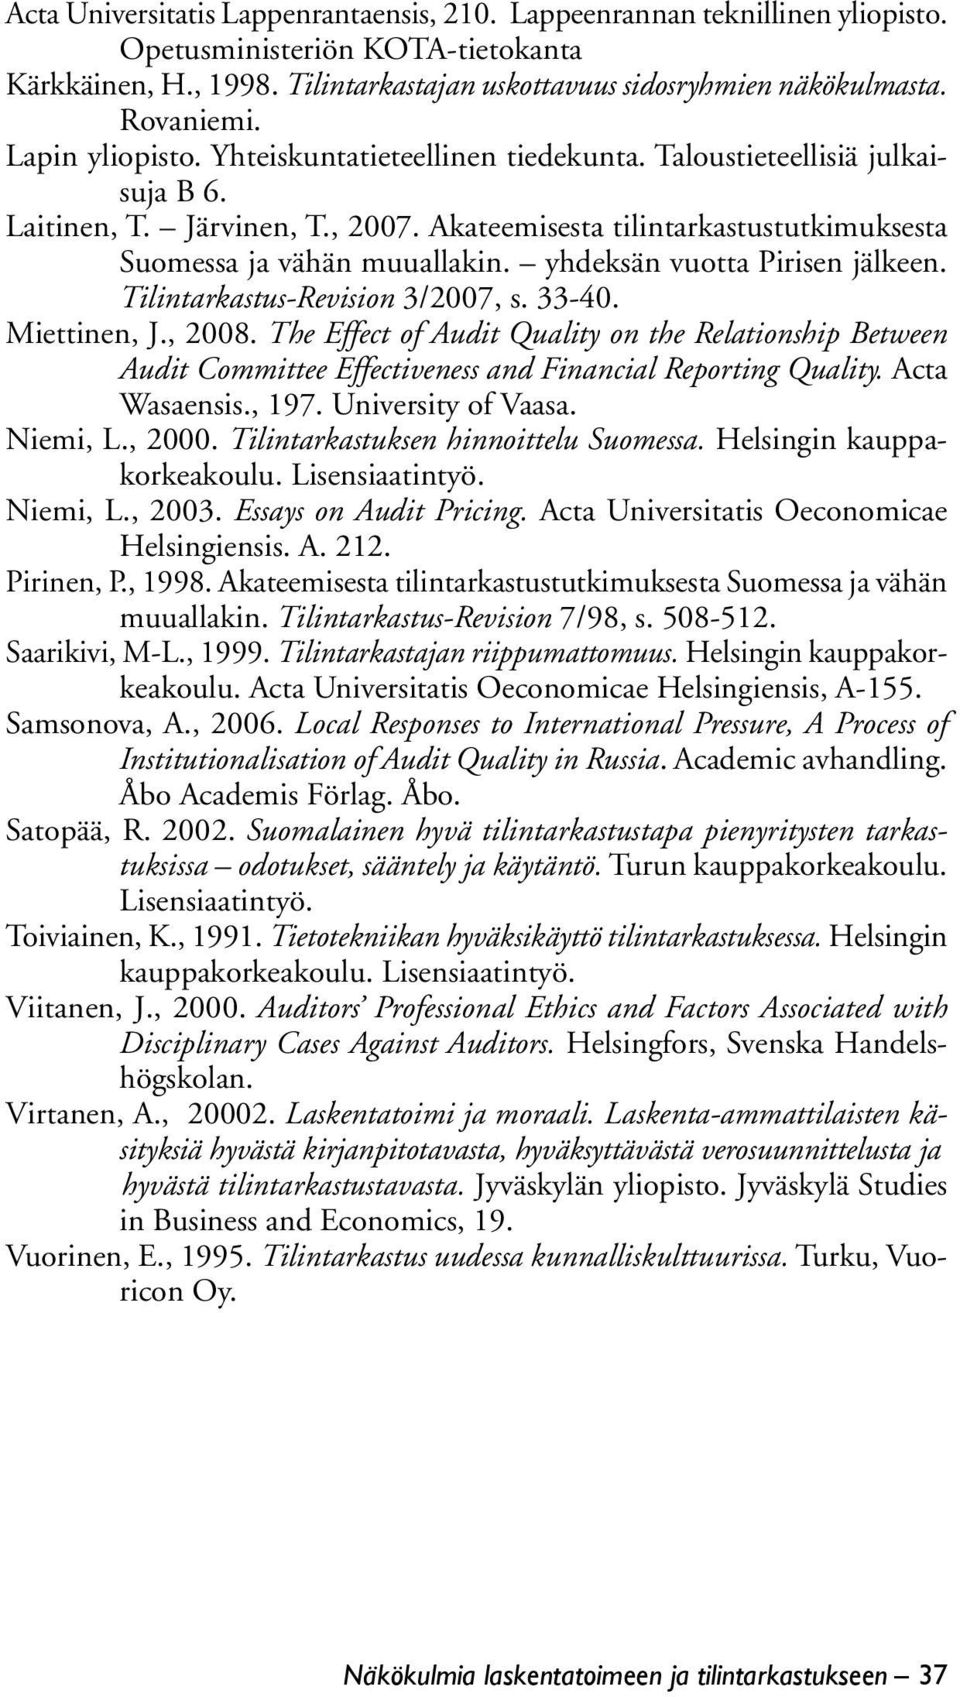 Akateemisesta tilintarkastustutkimuksesta Suomessa ja vähän muuallakin. yhdeksän vuotta Pirisen jälkeen. Tilintarkastus-Revision 3/2007, s. 33-40. Miettinen, J., 2008.